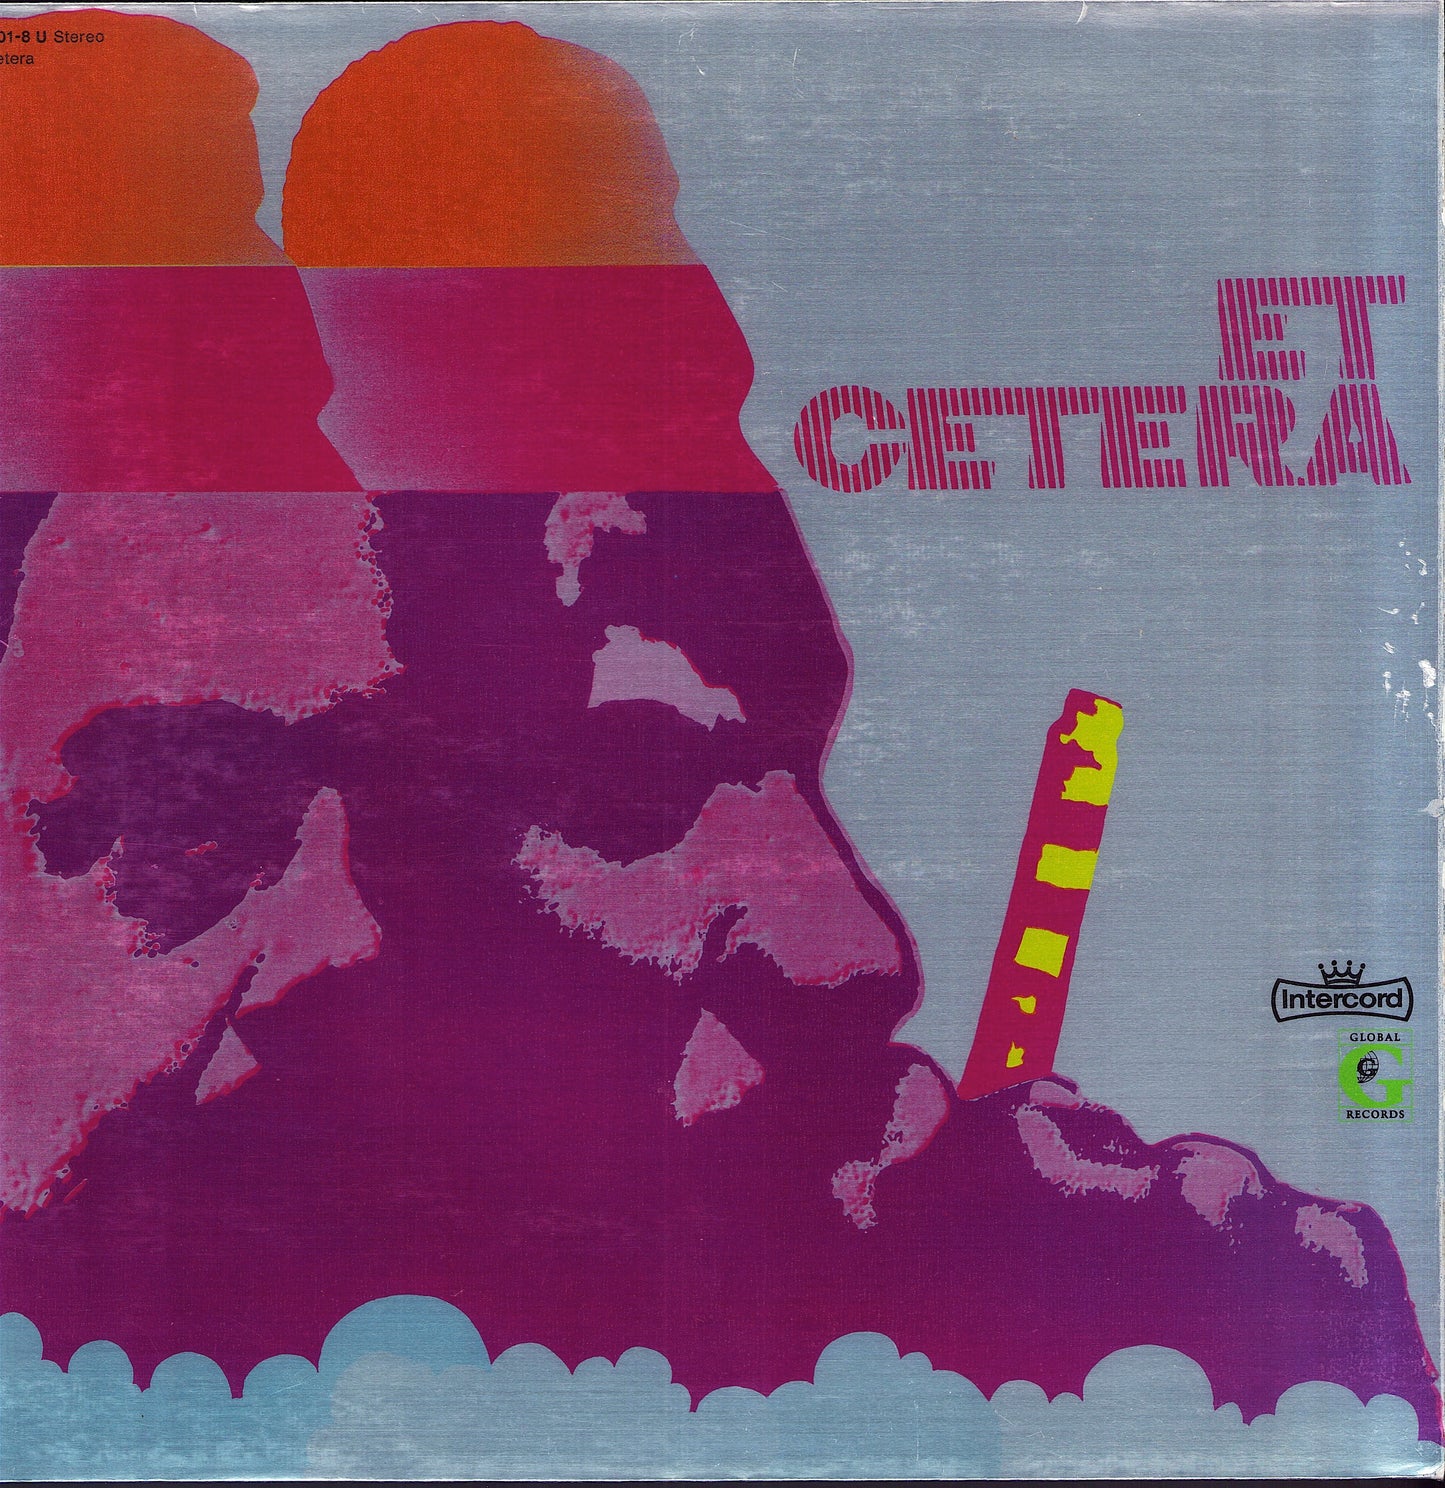 Et Cetera - Et Cetera Vinyl LP Germany 1972